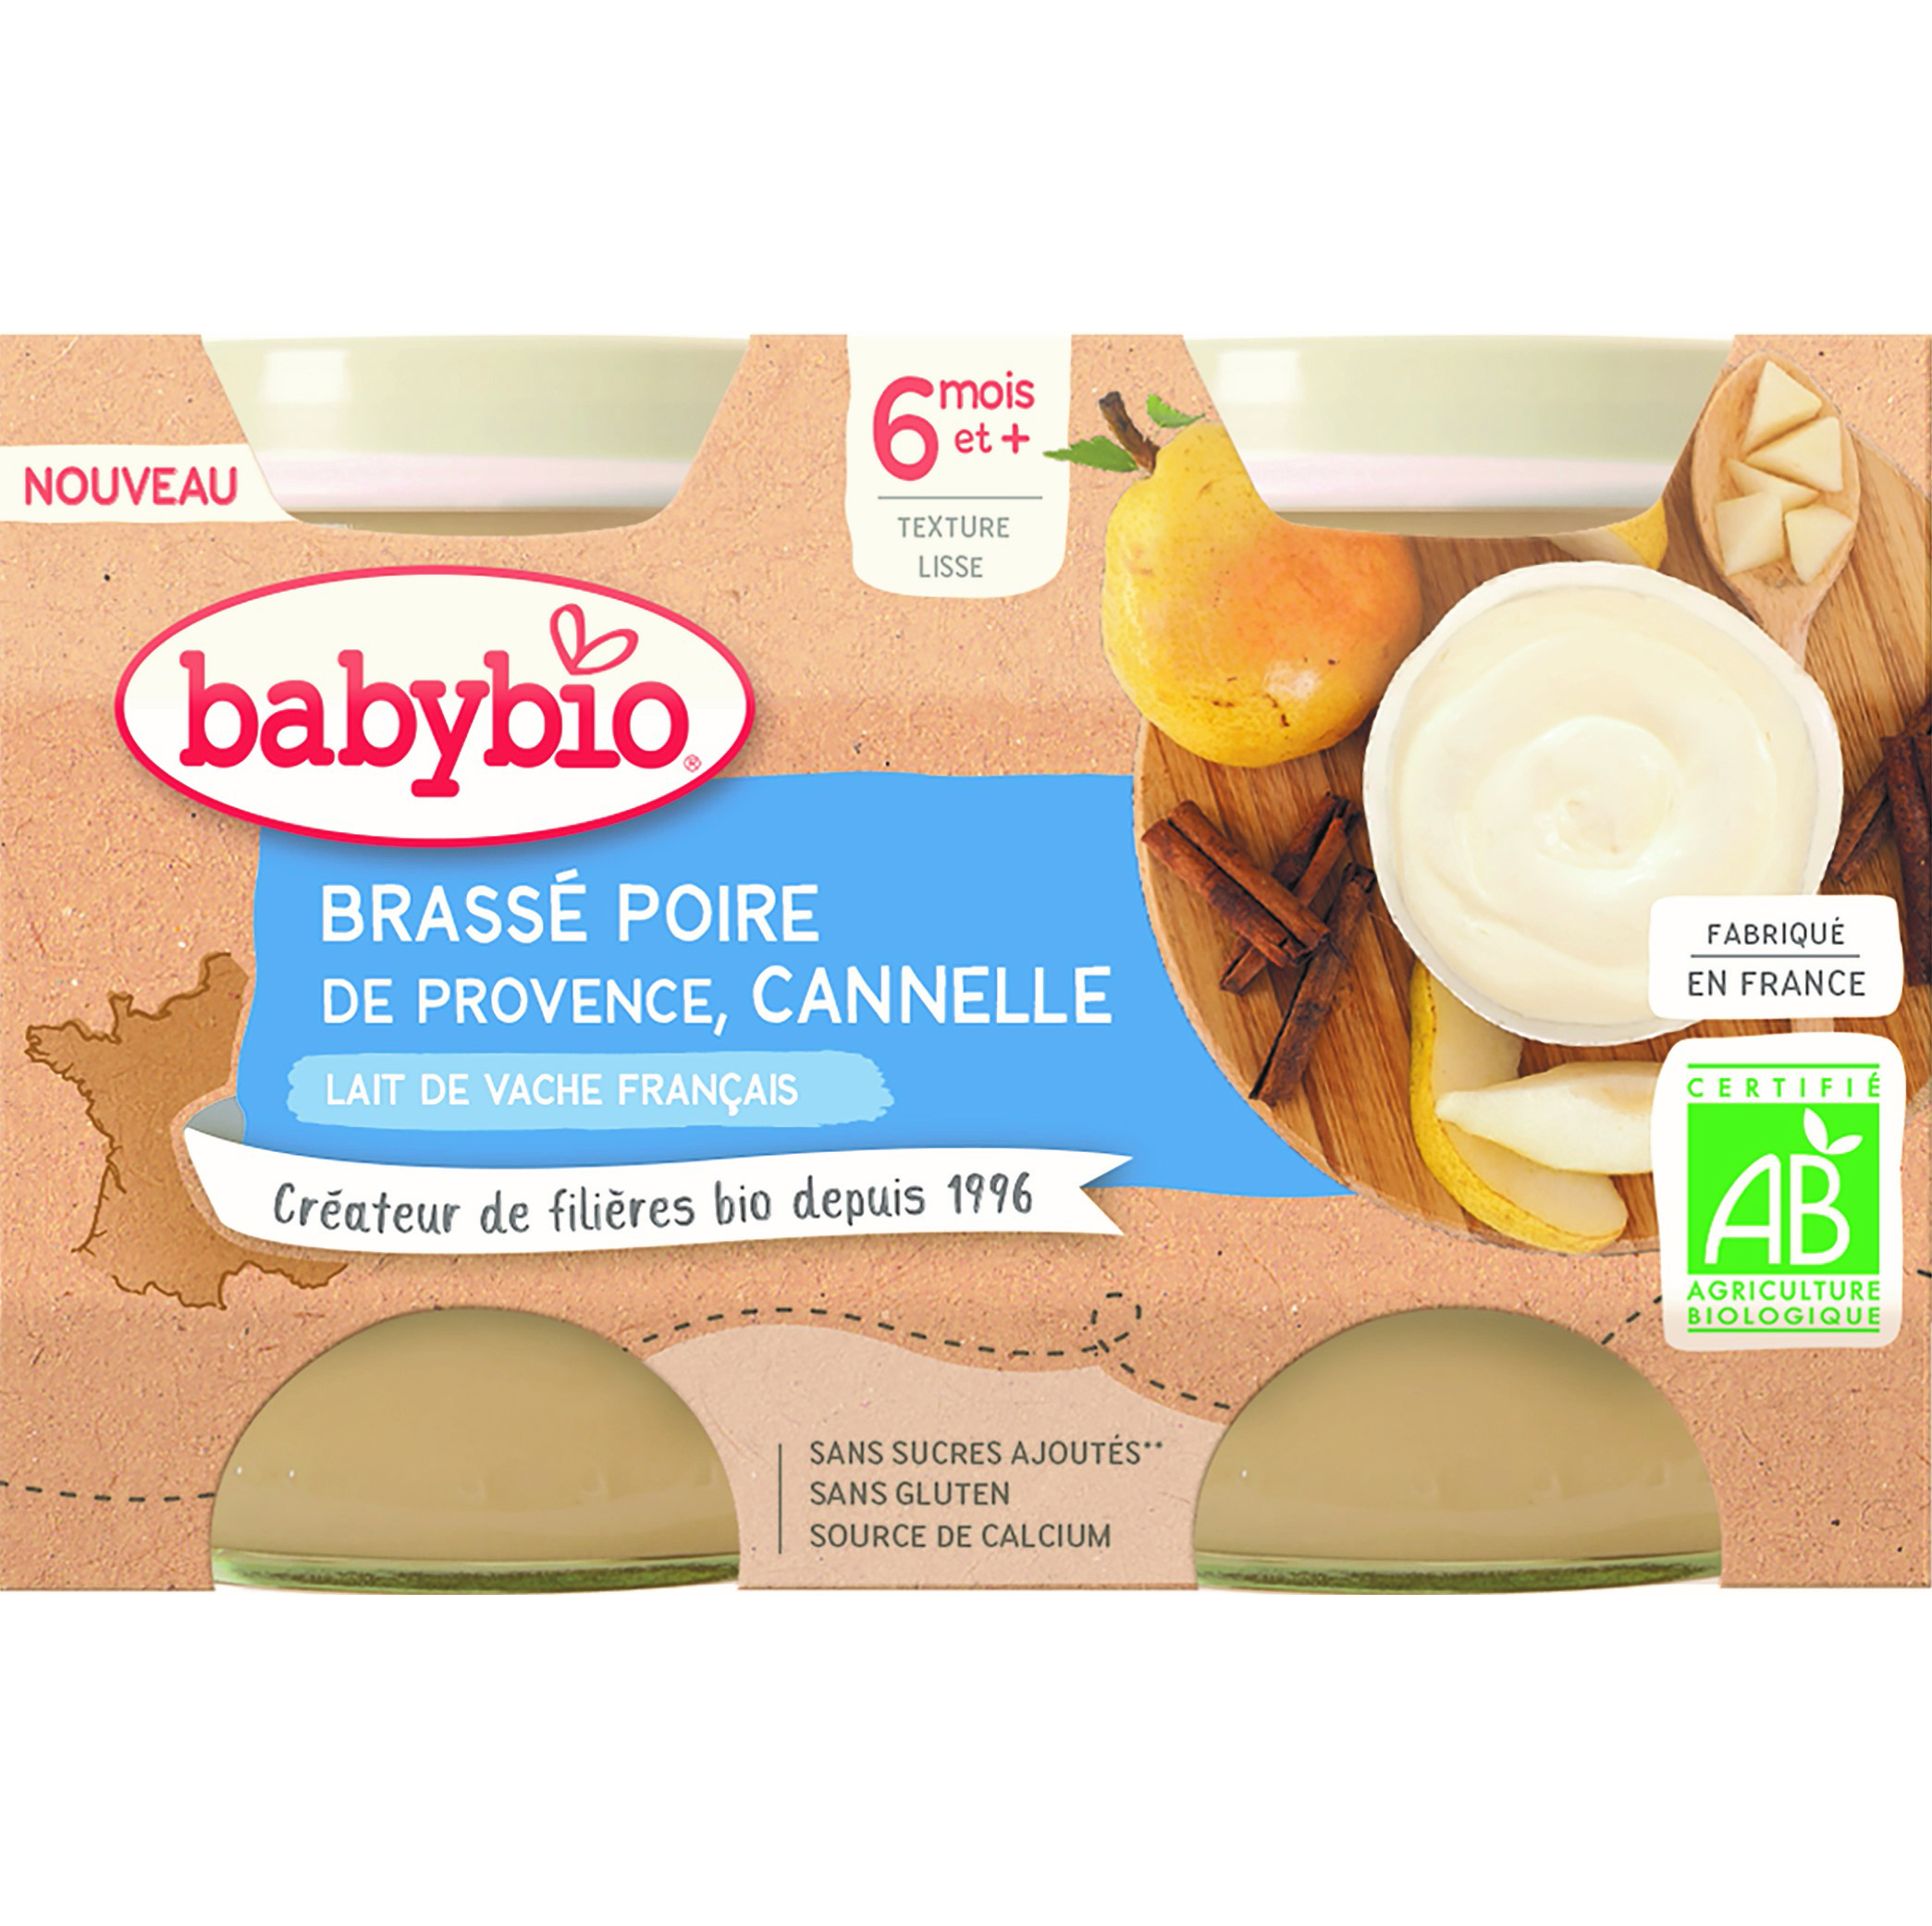 Brassé poire de Provence cannelle 2 x 130 g de Babybio, Desserts lactés :  yaourts, brassés : Aubert